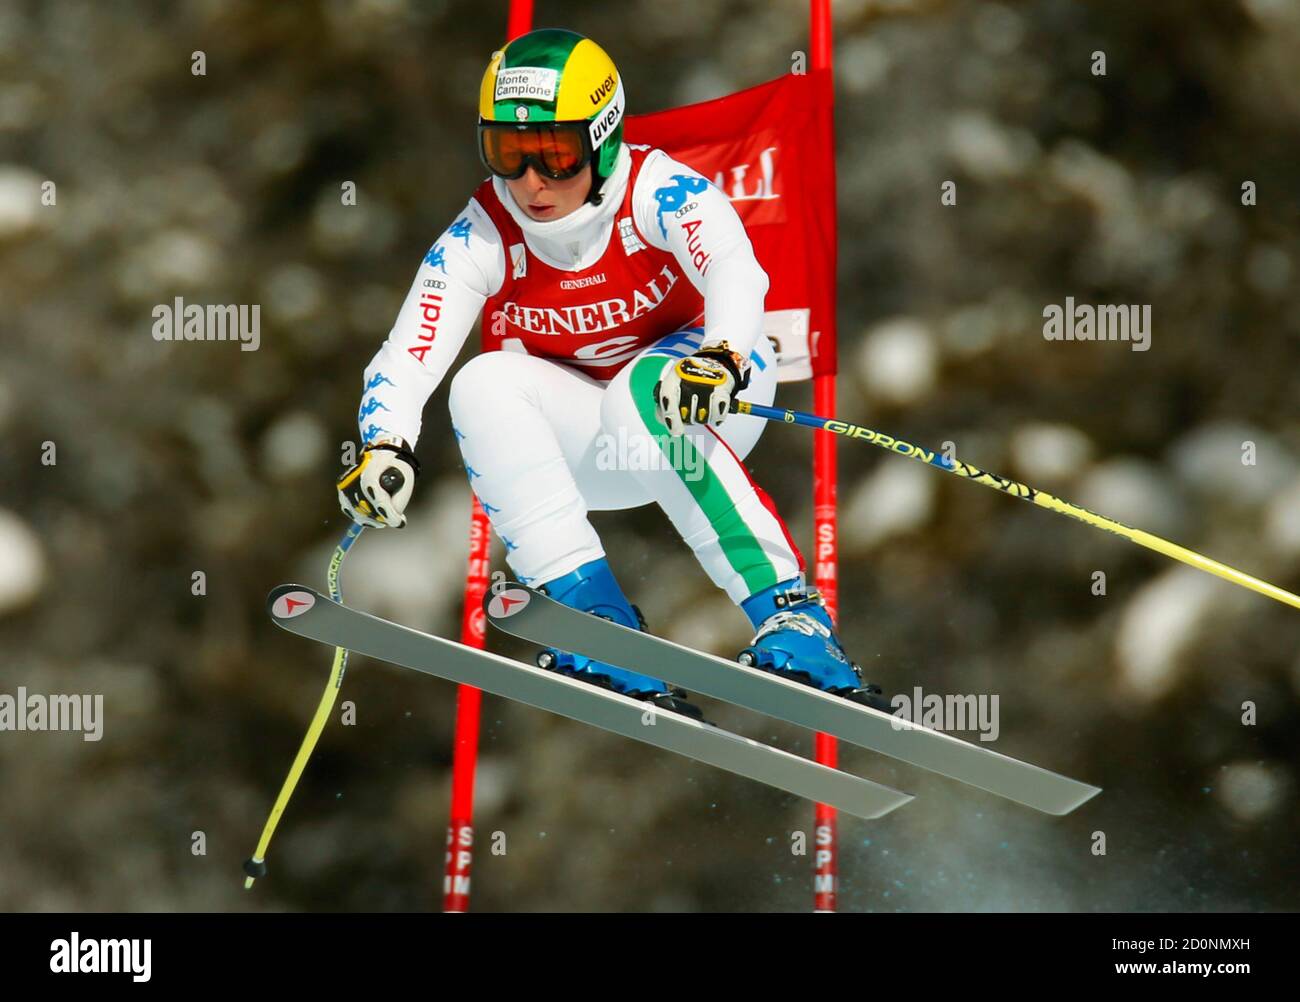 Elena Fanchini aus Italien nimmt beim alpinen Skisport-Training für die Damen-Weltcup-Abfahrt in Lake Louise, Alberta, am 27. November 2012 Luft auf. REUTERS/Mike Blake (KANADA - Tags: SKIFAHREN) Stockfoto